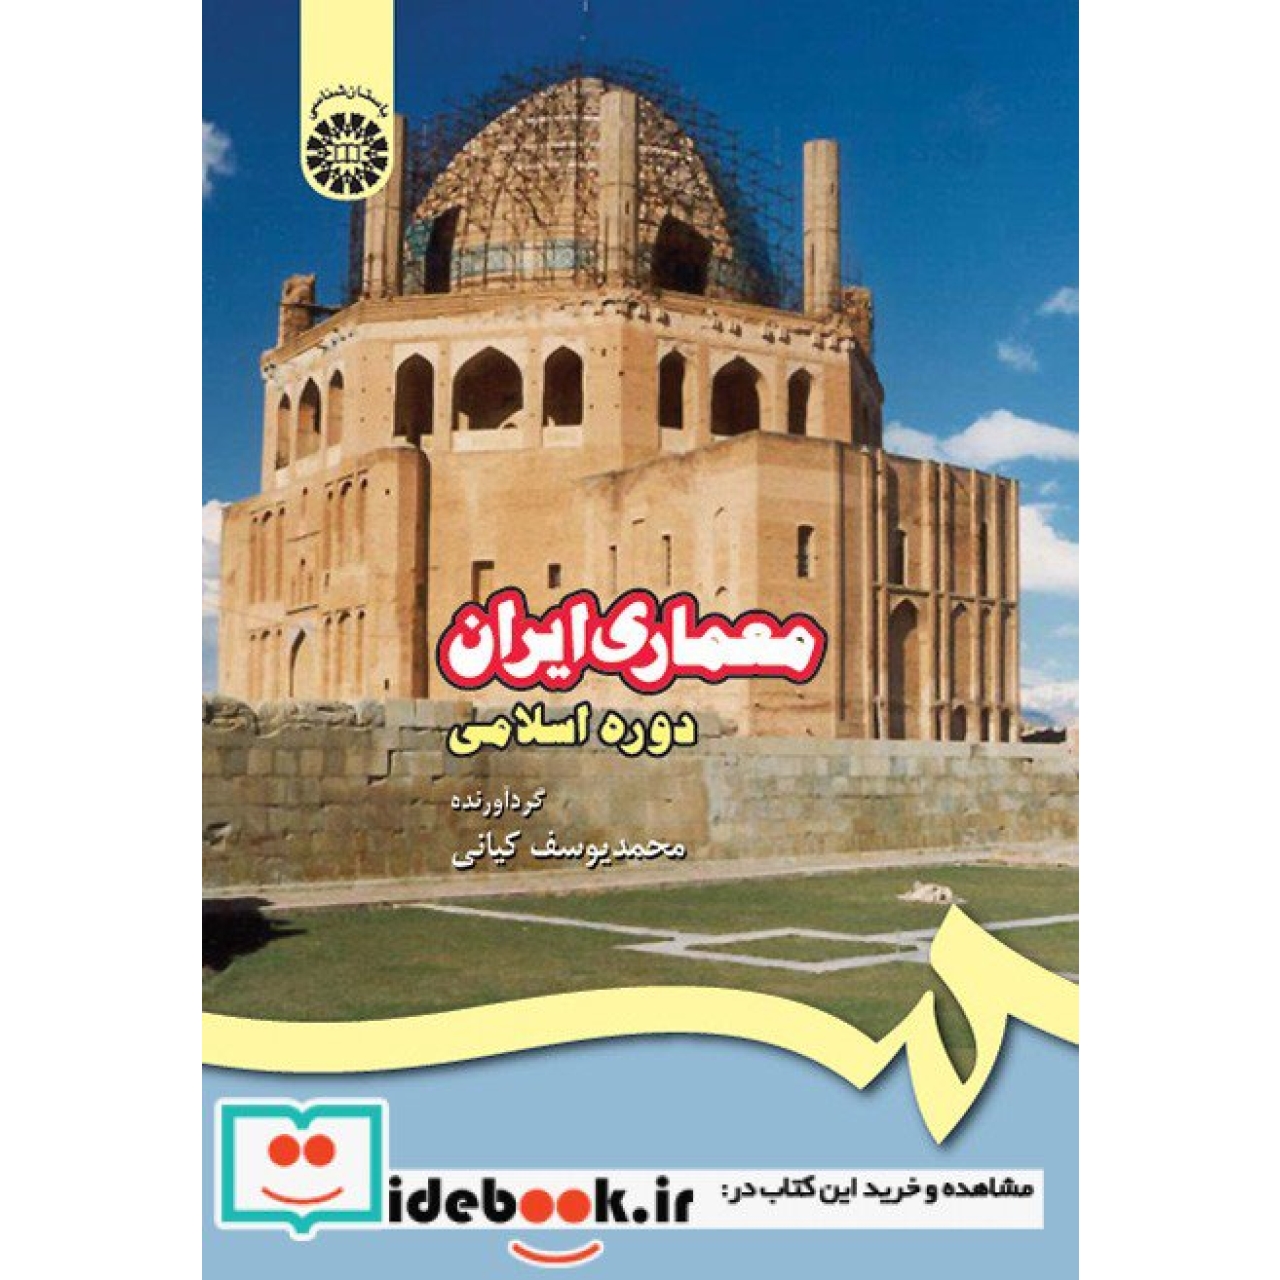 معماری ایران دوره اسلامی